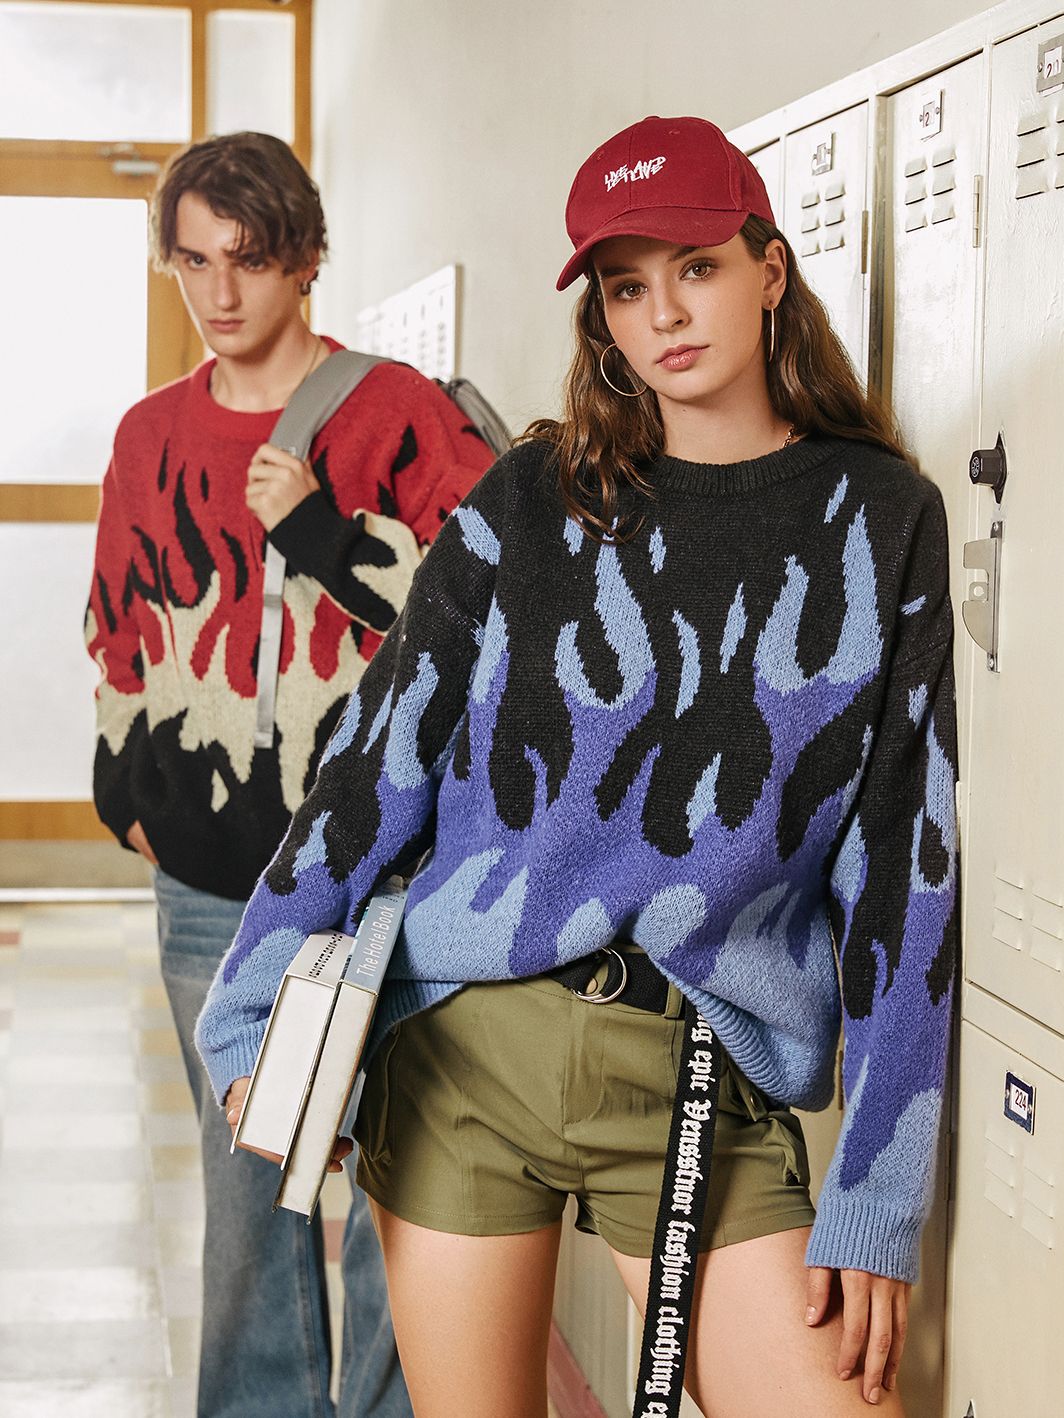 un niño indie elevado y una niña vistiendo suéteres tejidos con llamas indie en azul, rojo y negro y están en la escuela